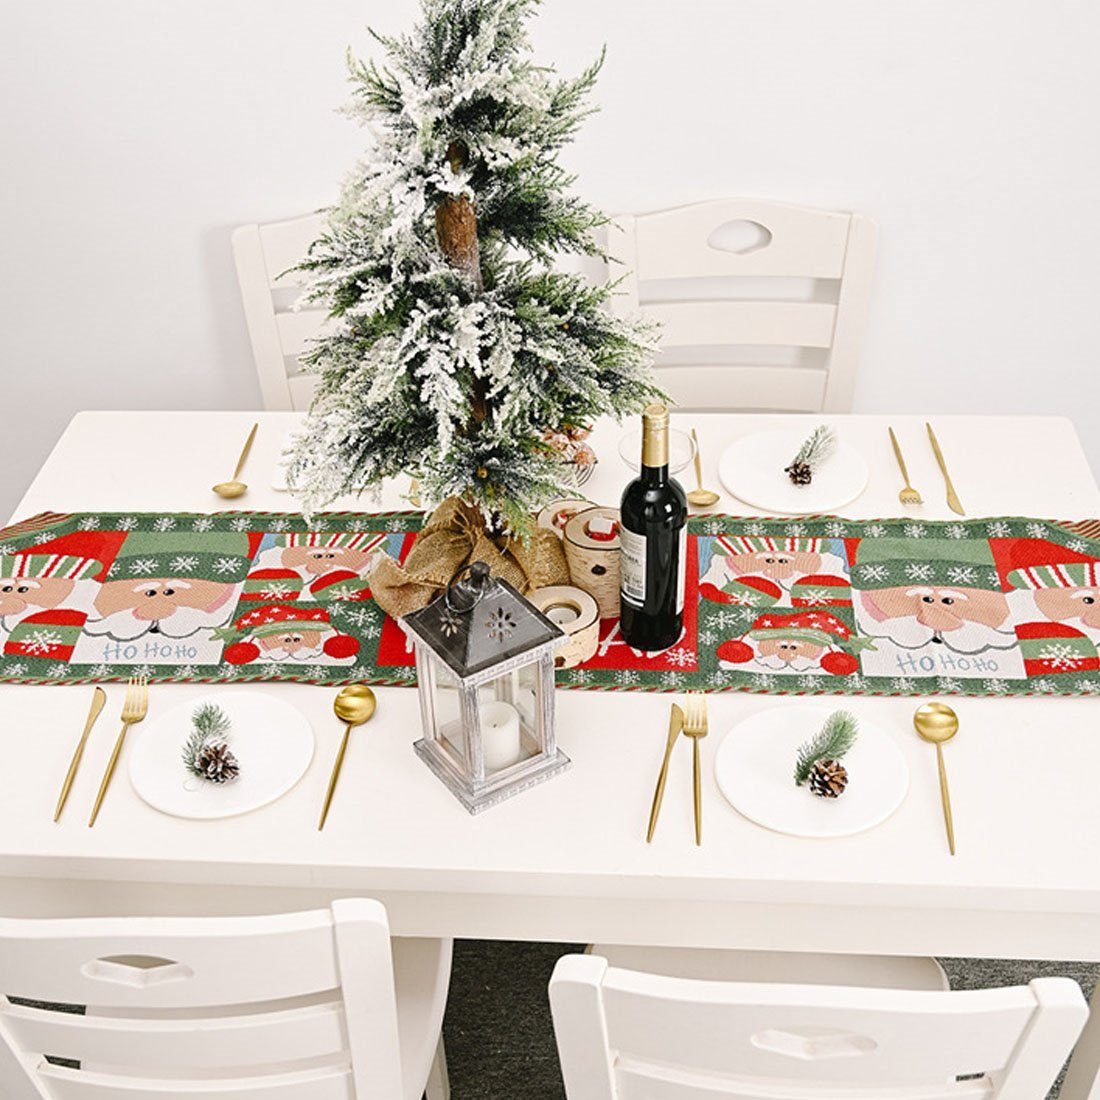 Tischfahne DÖRÖY Tischdekoration Tischläufer, festliche Weihnachtliche Tischläufer